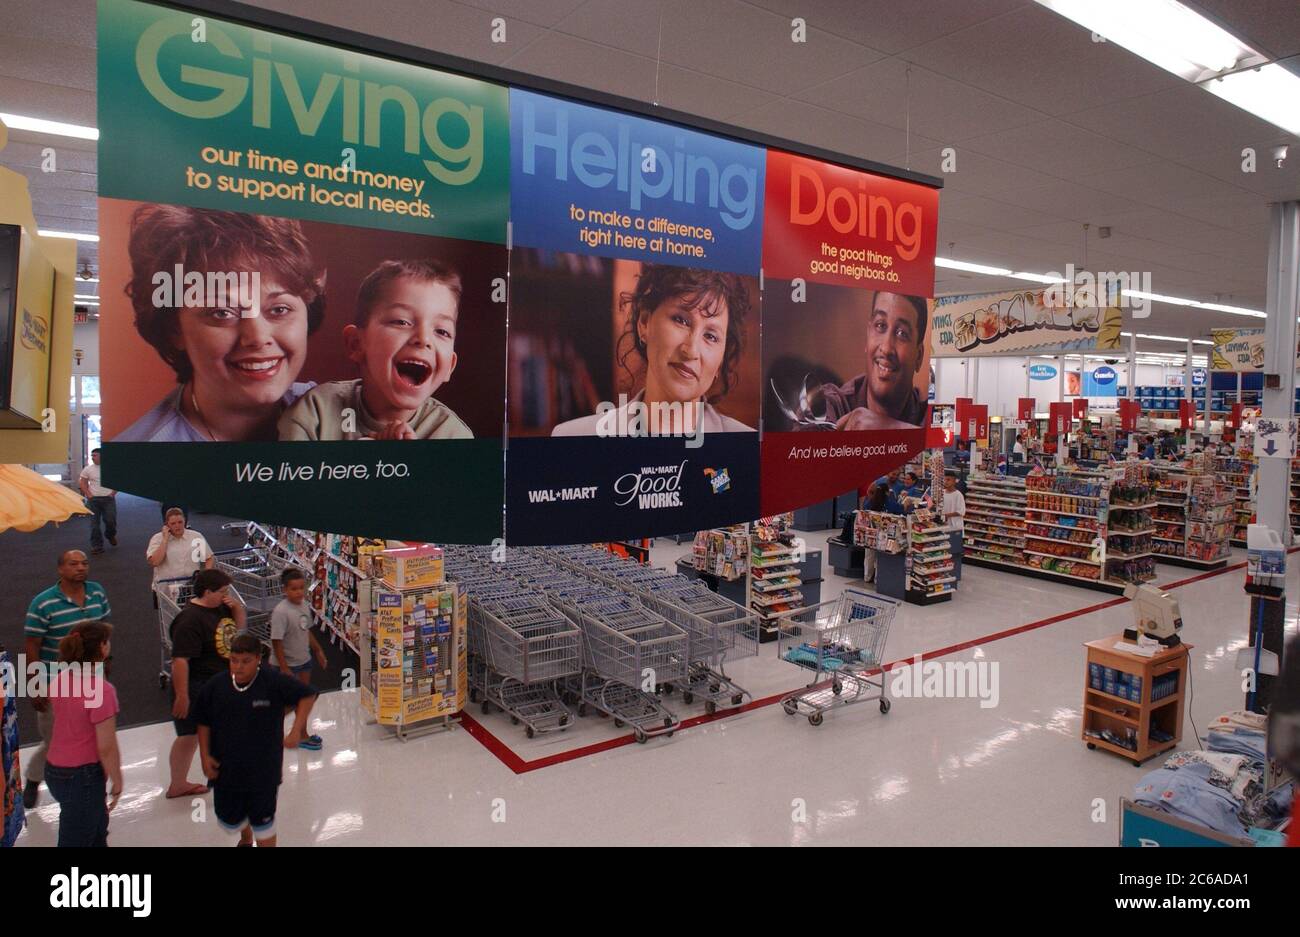 Austin, Texas, USA, 11. Juli 2003: Das Innere des Wal-Mart-Stores zeigt Banner, auf denen die Spenden des Unternehmens an gemeinnützige Organisationen vor Ort beworben werden. ©Bob Daemmrich Stockfoto